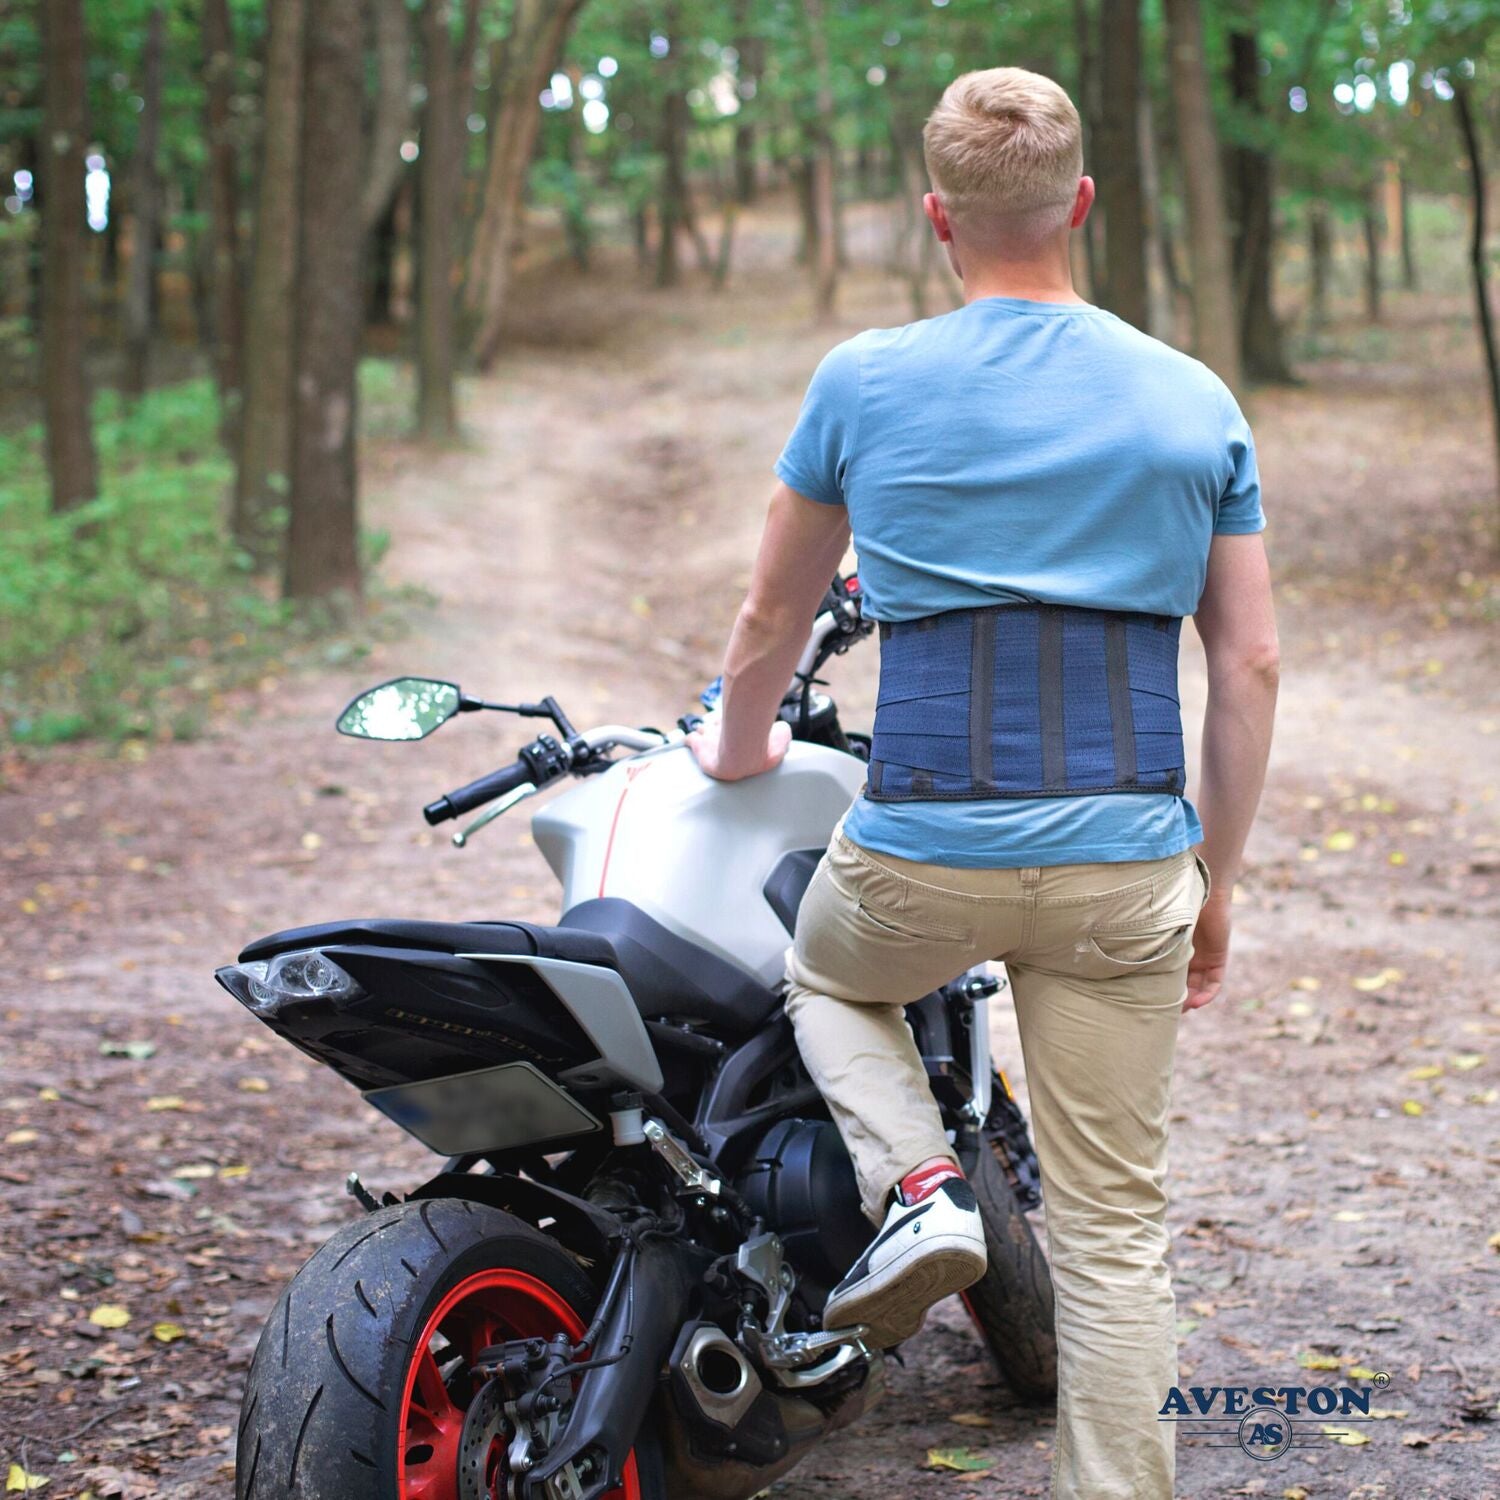 AVESTON® Kidney Belt Back Support Brace for Motorcycle Riding &amp; Motocross